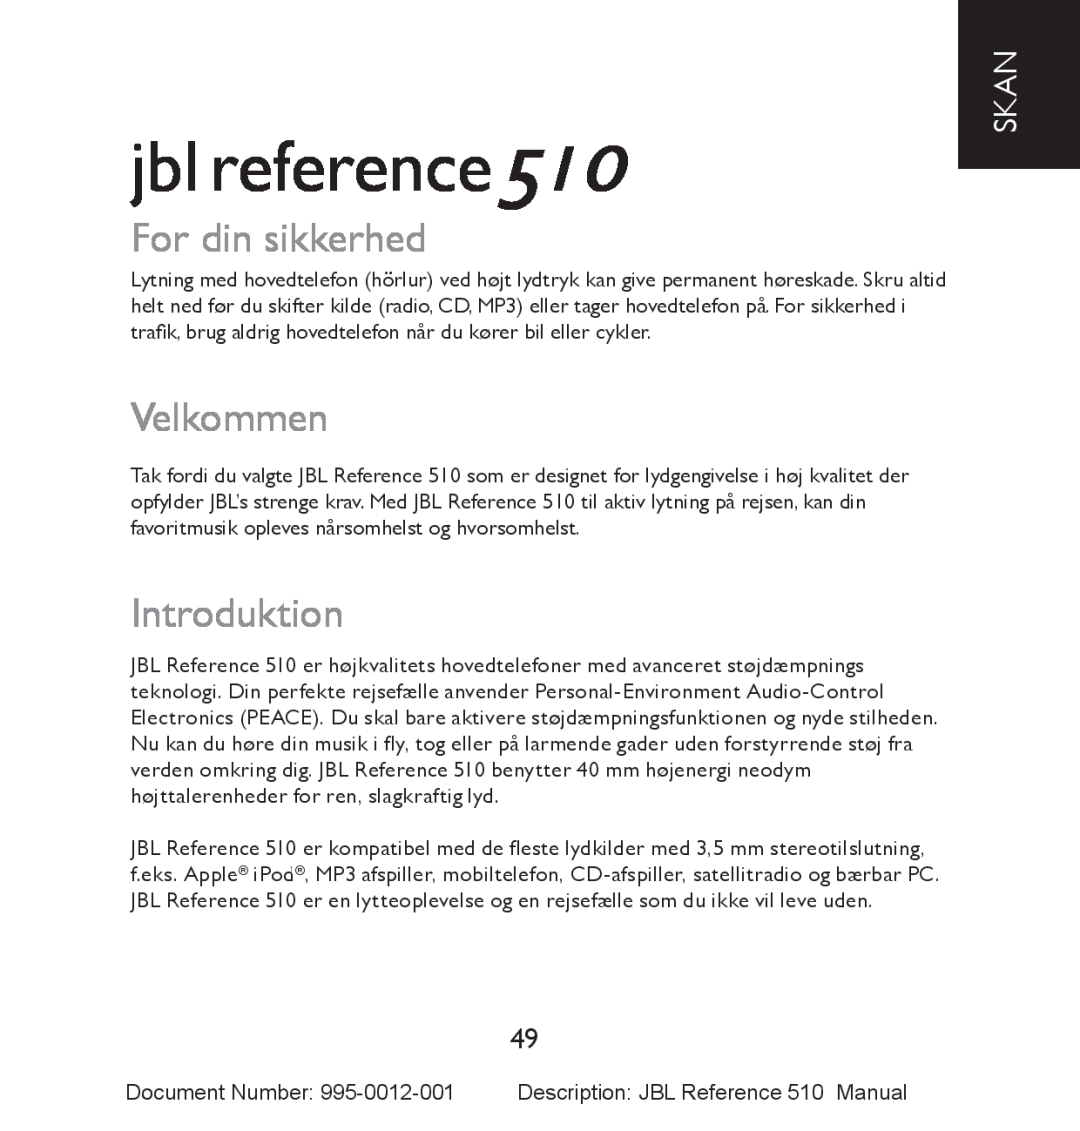 JBL manual jbl reference510, For din sikkerhed, Velkommen, Introduktion, Skan 